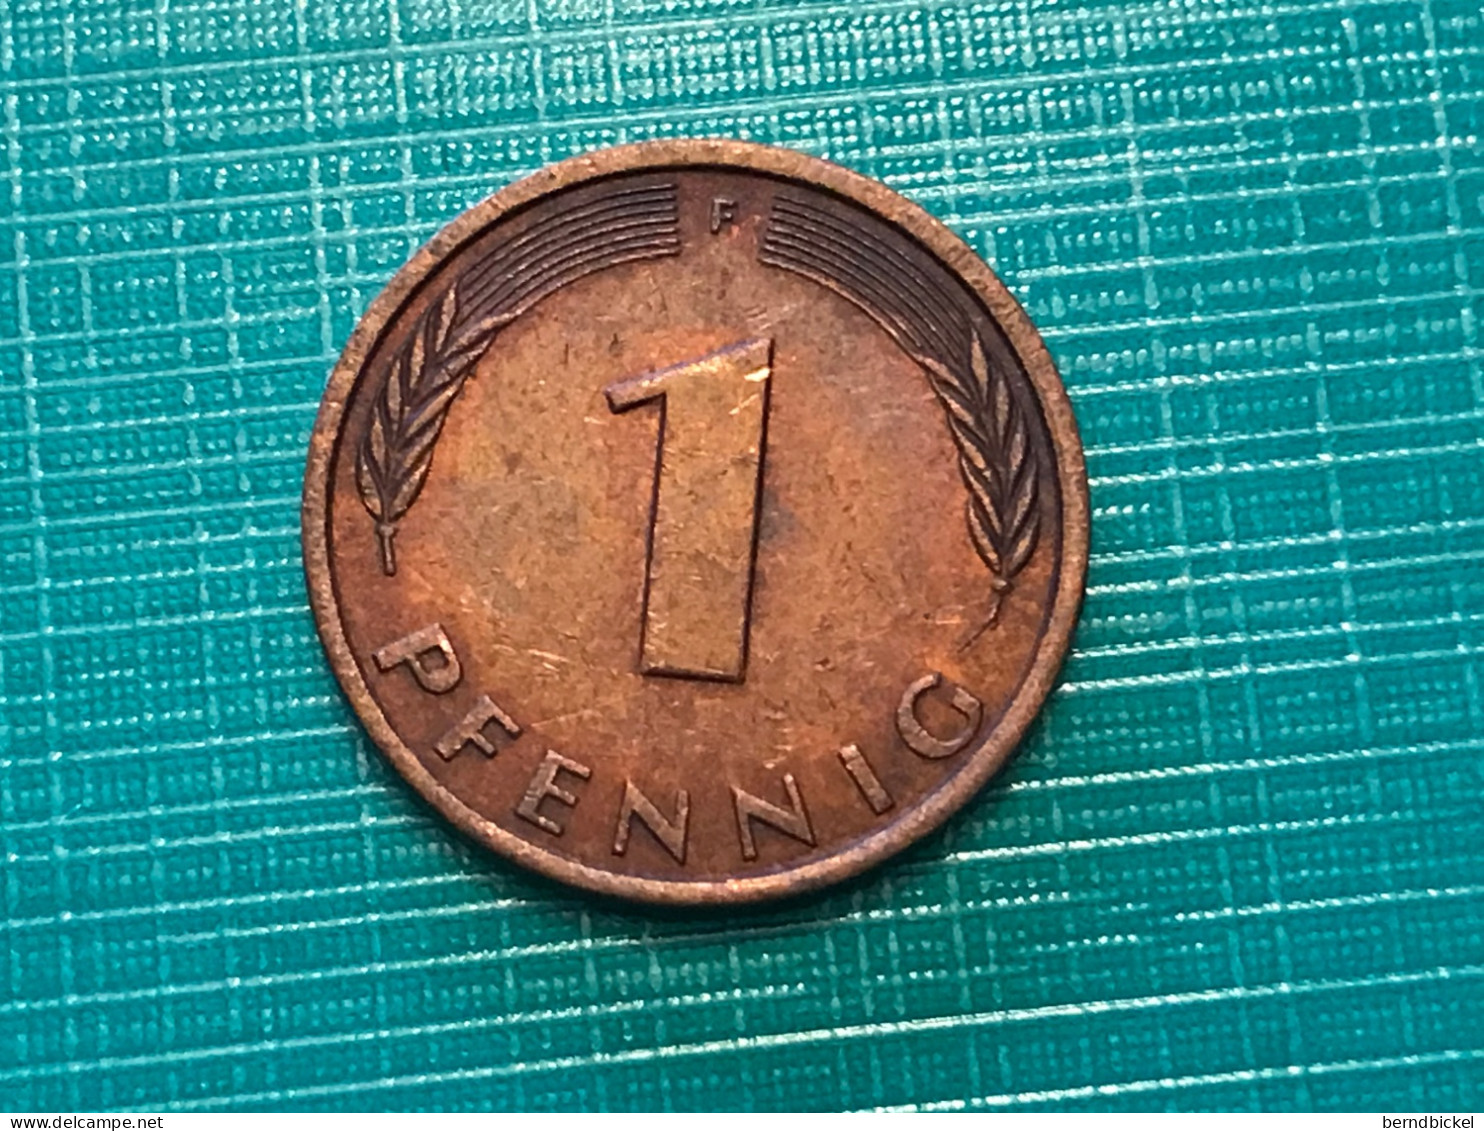 Münze Münzen Umlaufmünze Deutschland 1 Pfennig 1991 Münzzeichen F - 1 Pfennig